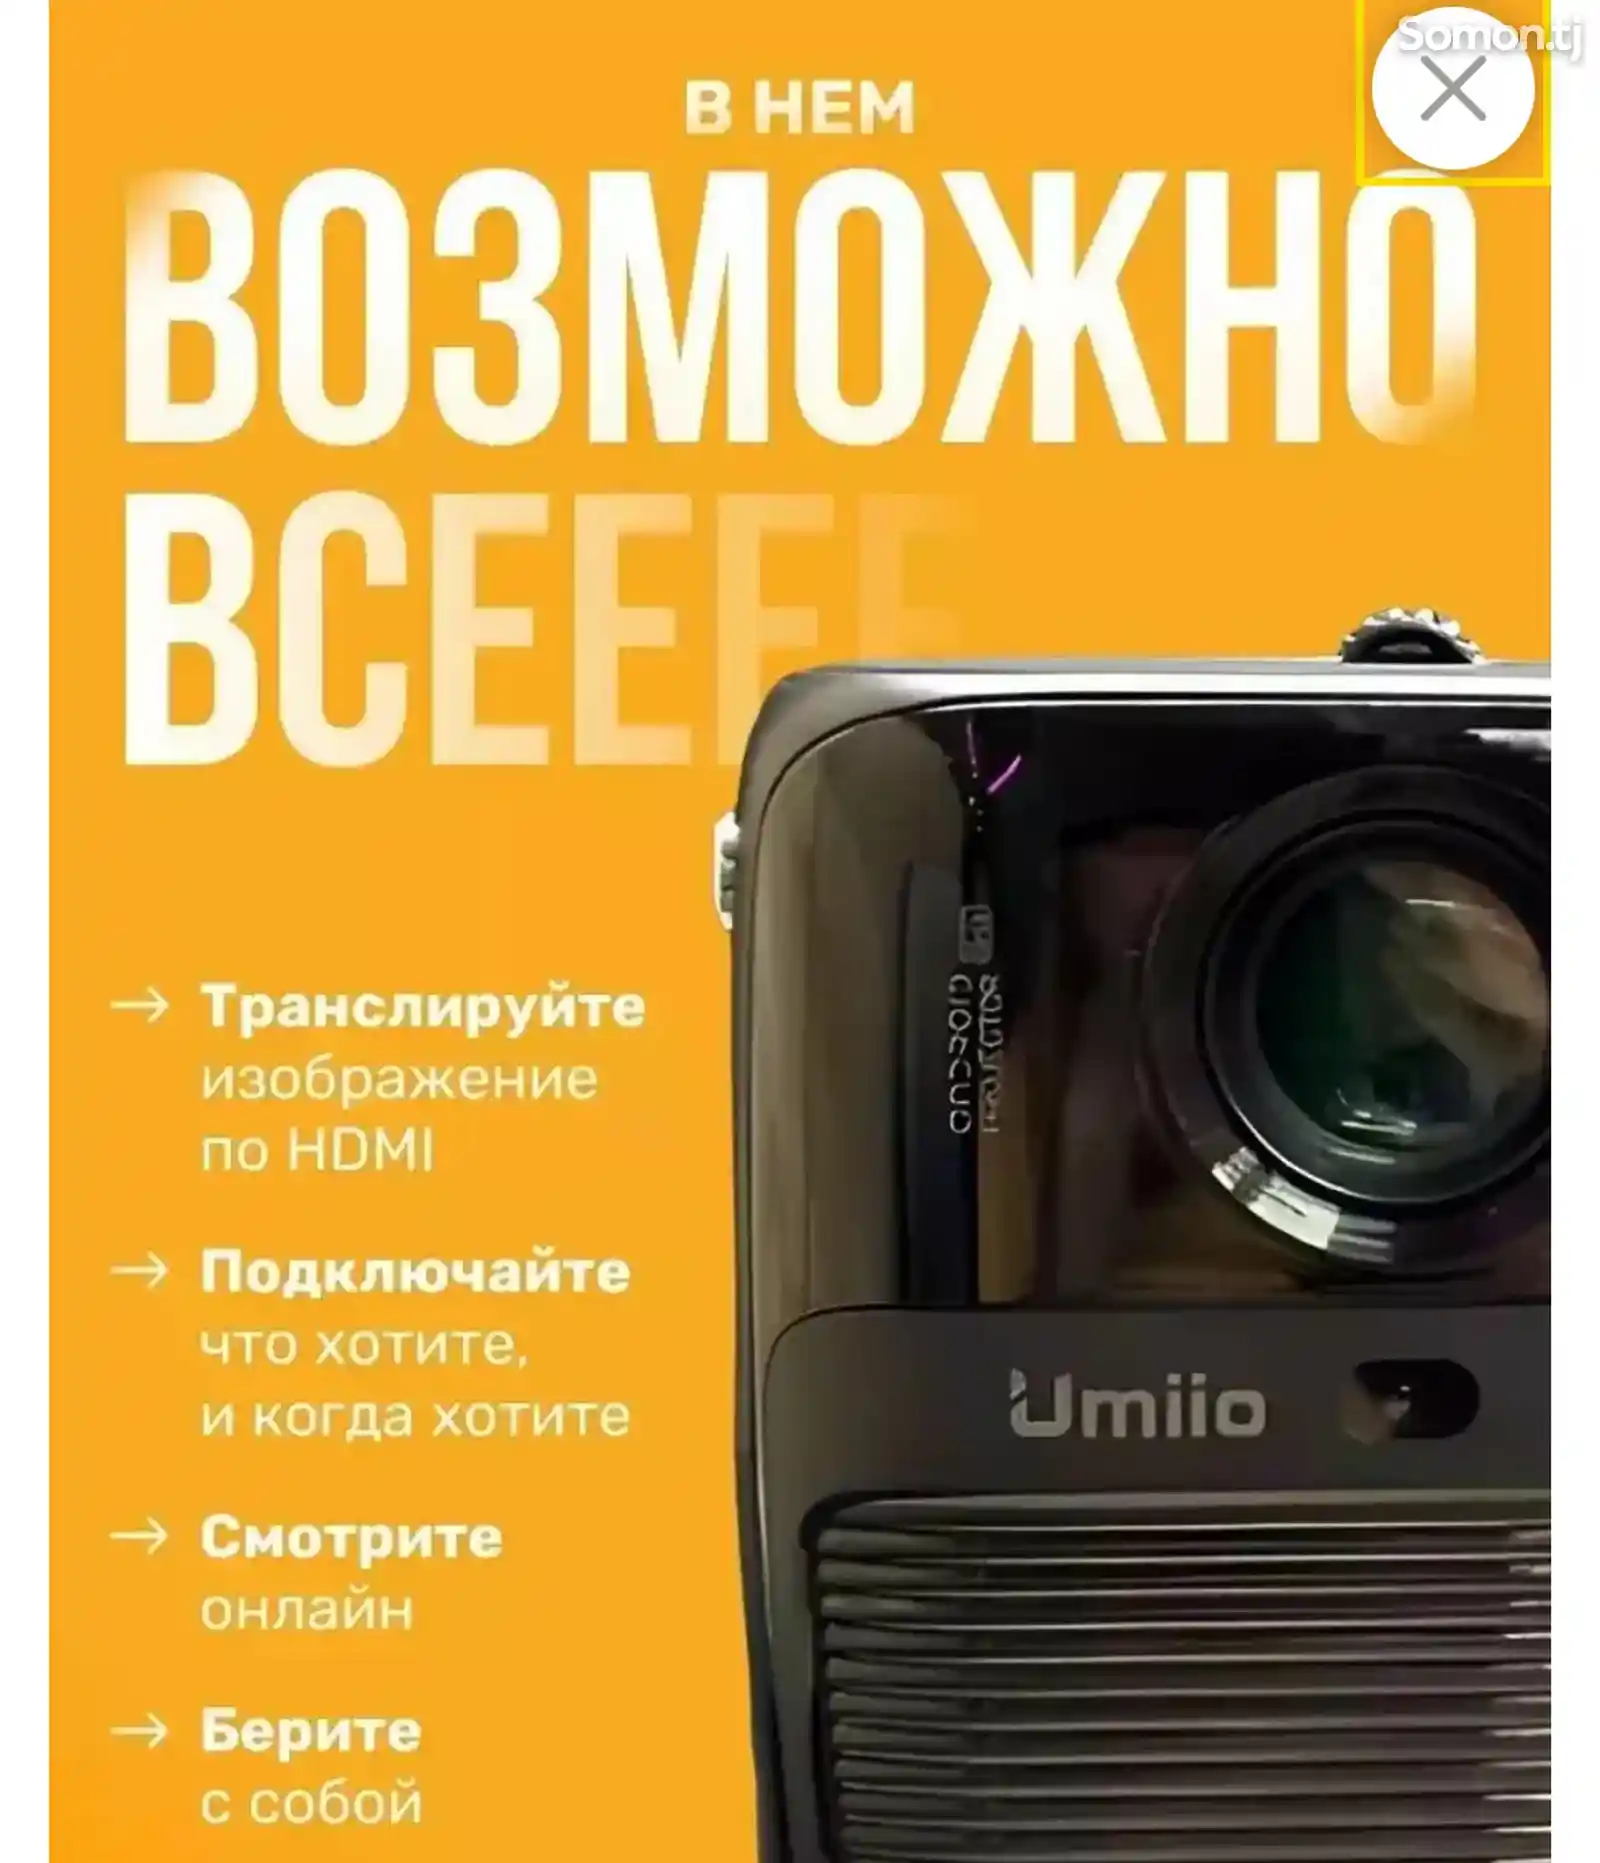 Портативный проектор Umiio для фильмов, YouTube-10